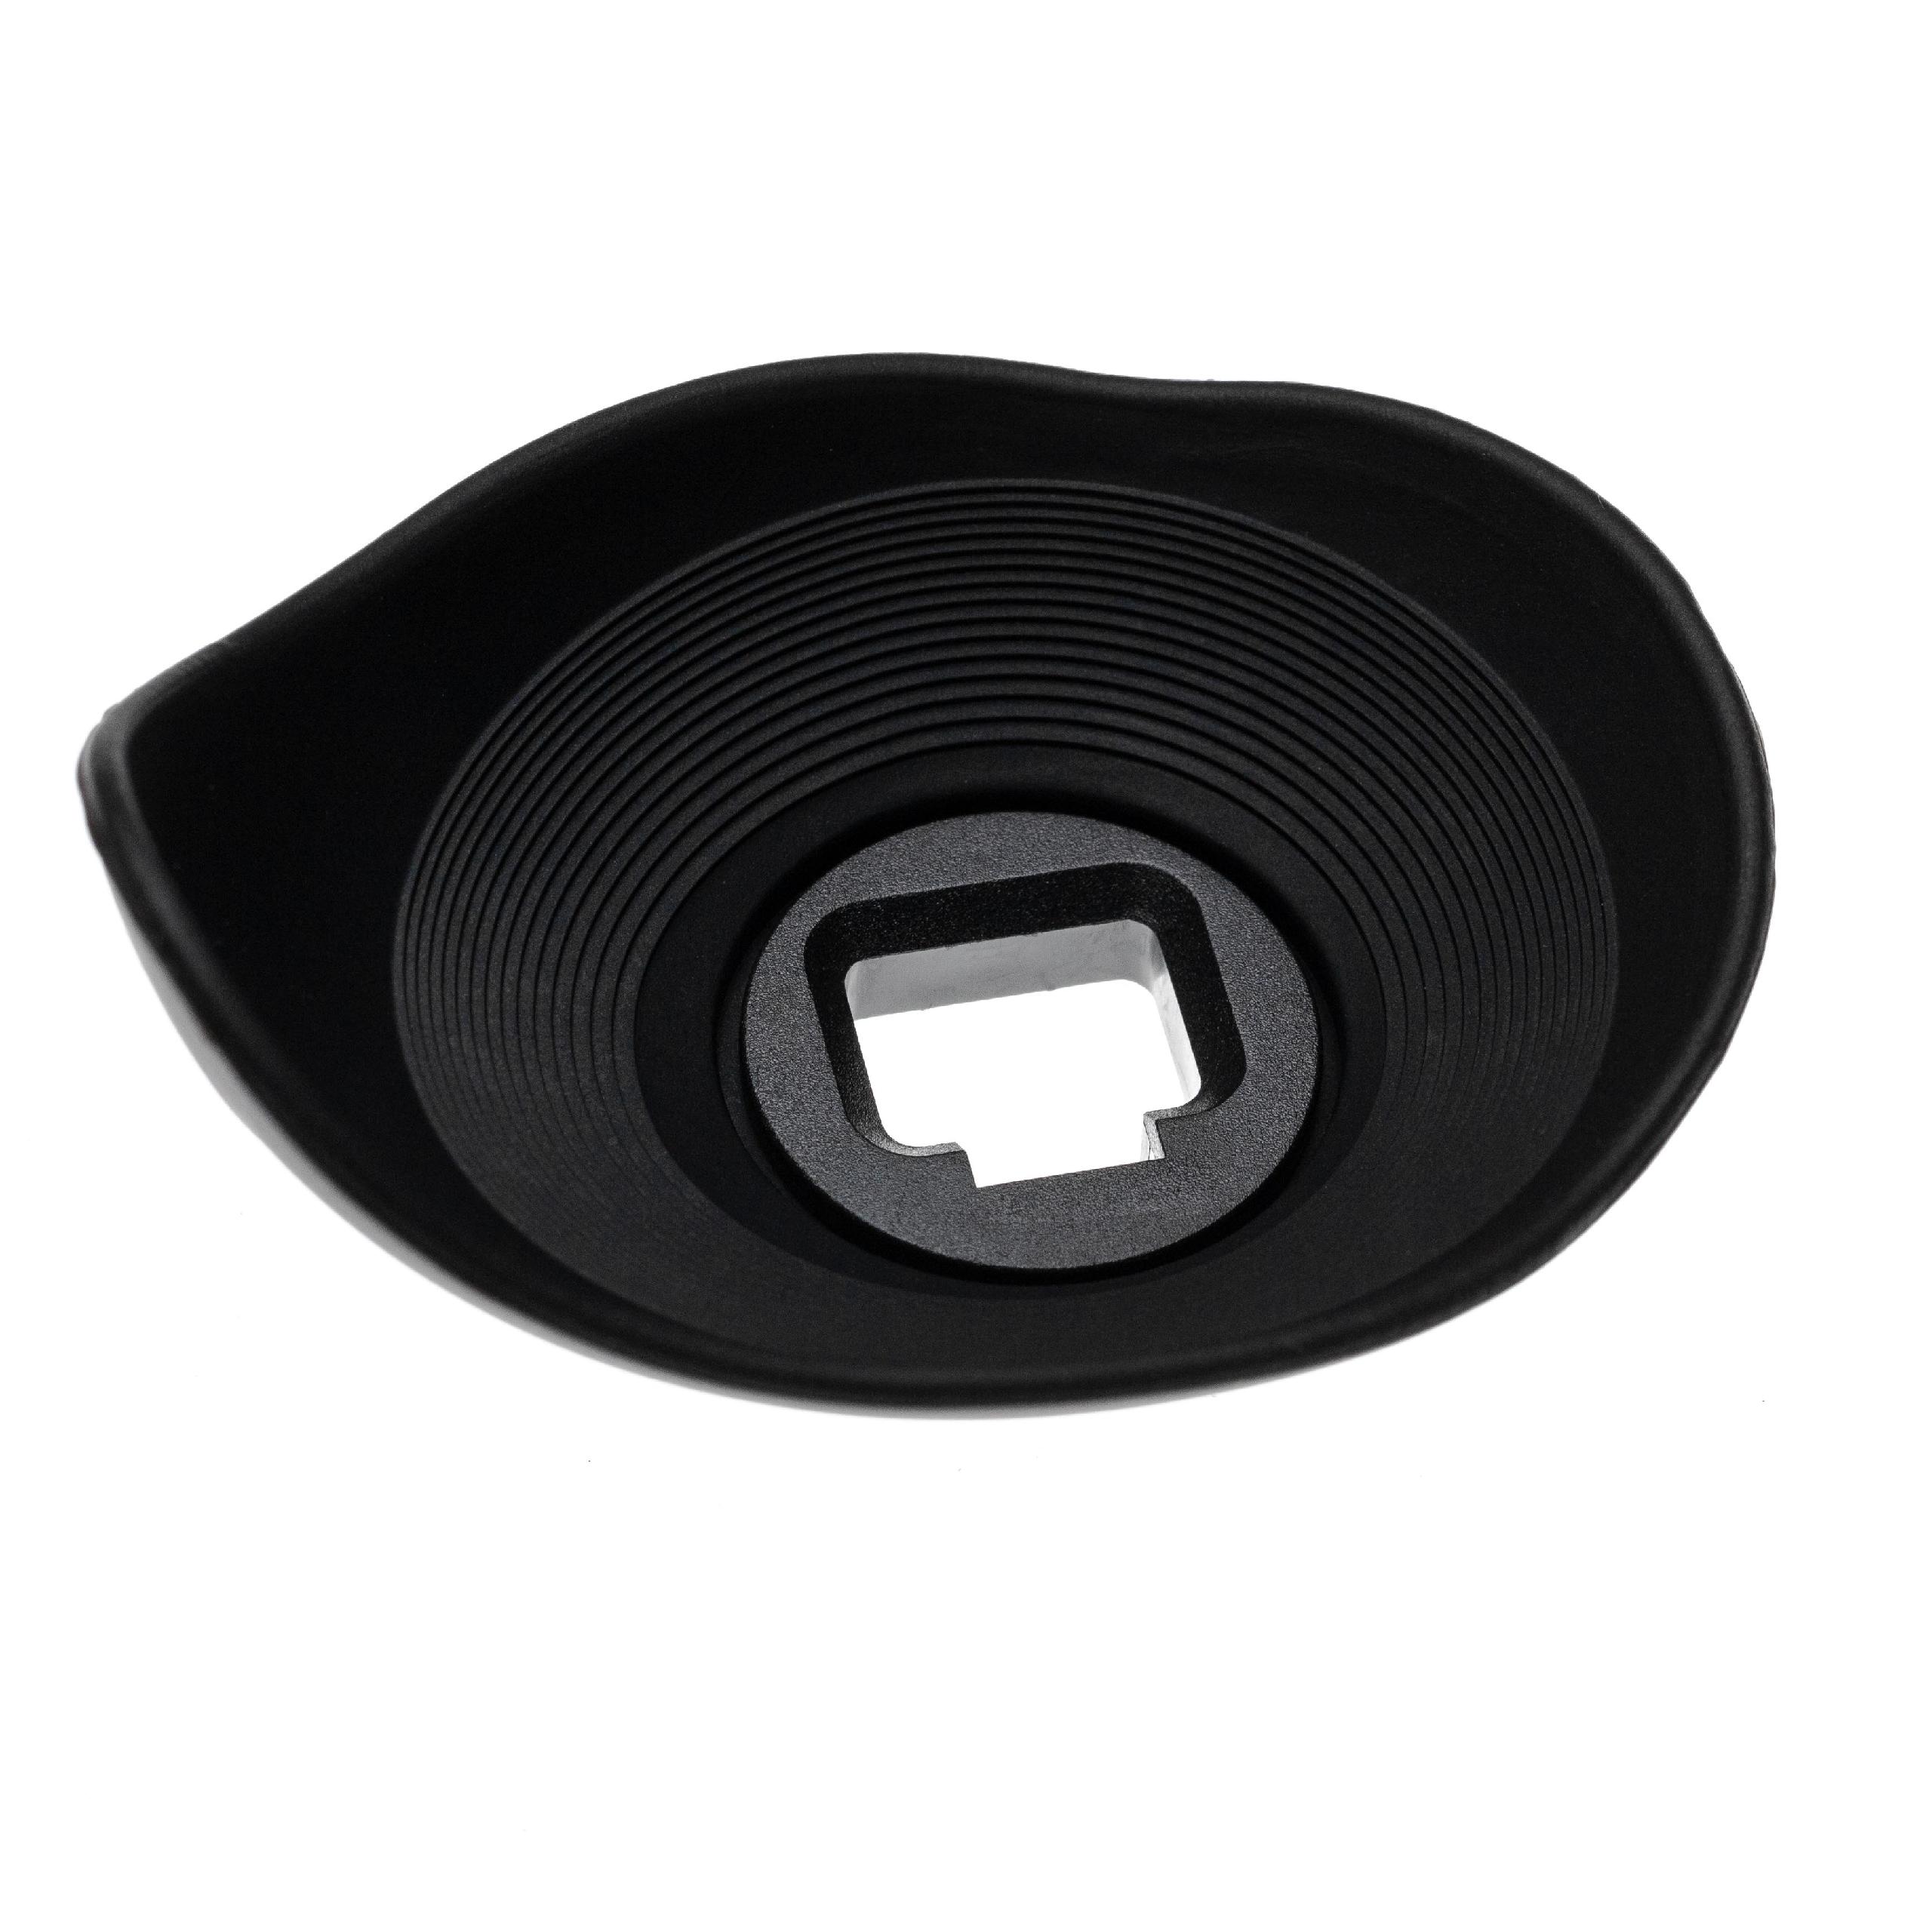 Augenmuschel Sucher als Ersatz für Sony FDA-EP16 für Sony 7 II u.a., 360° drehbar, Kunststoff, Gummi